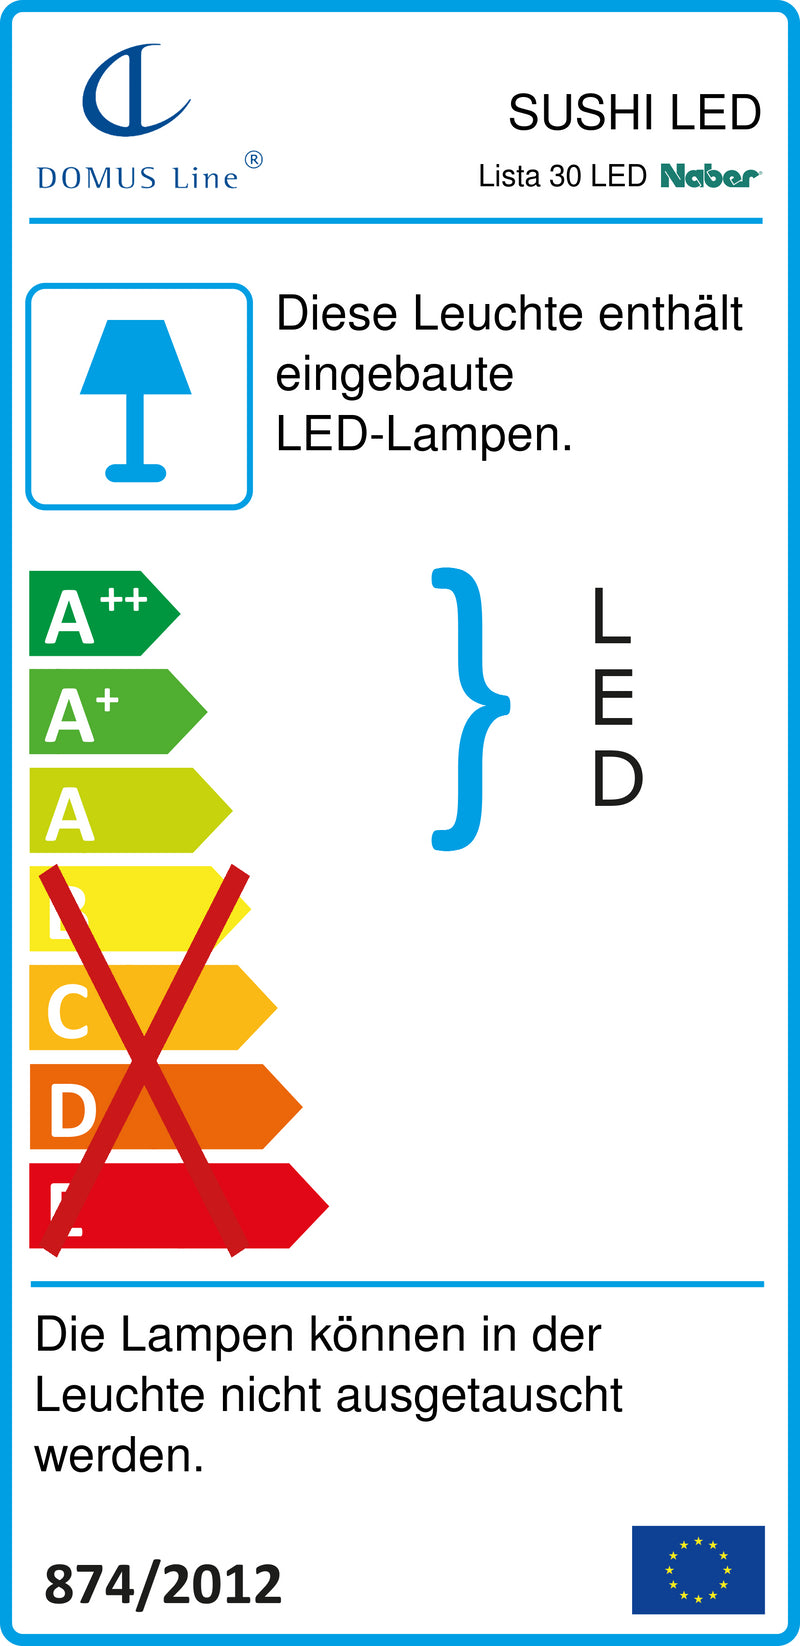 E-Label zu Zeichnung zu Lista 30 LED als Variante L 450 mm, 3,8 W, schwarz matt von Naber GmbH in der Kategorie Lichttechnik in Österreich auf conceptshop.at